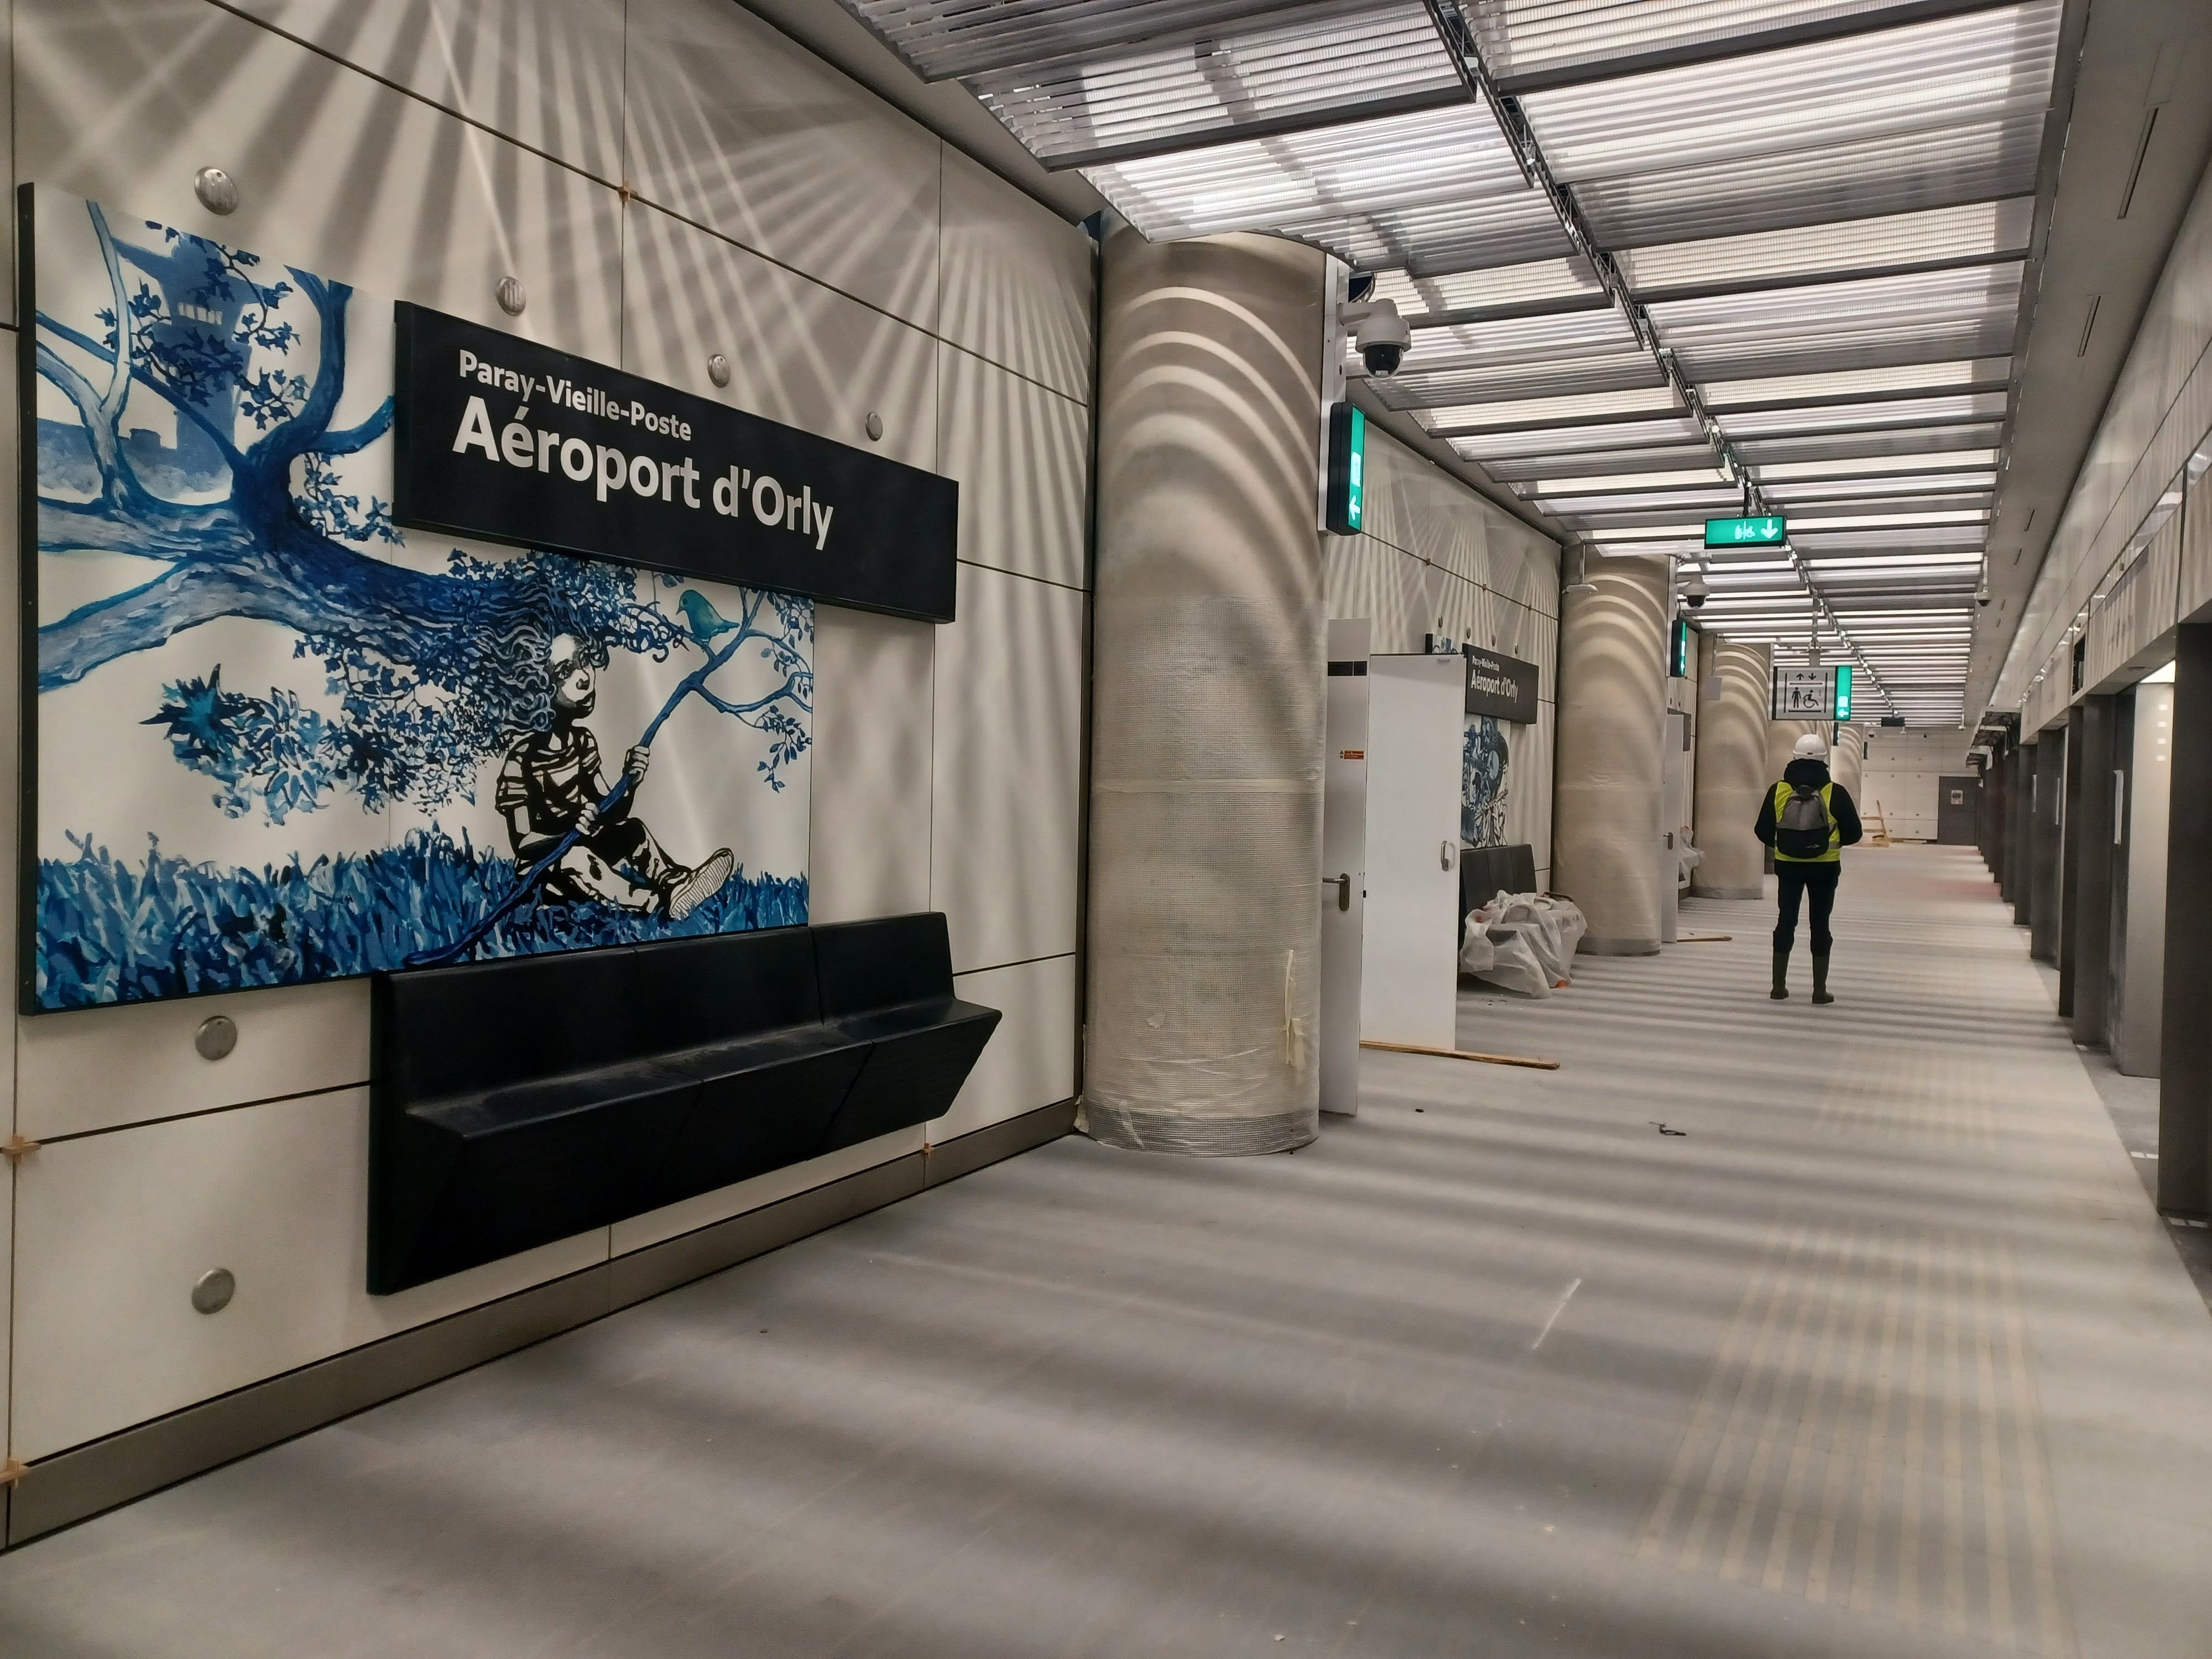 La gare Aéroport d'Orly, sur la ligne 14. Elle sera inaugurée, comme tout le prolongement sud et nord du métro automatique, en juin prochain. / Photo Jila Varoquier